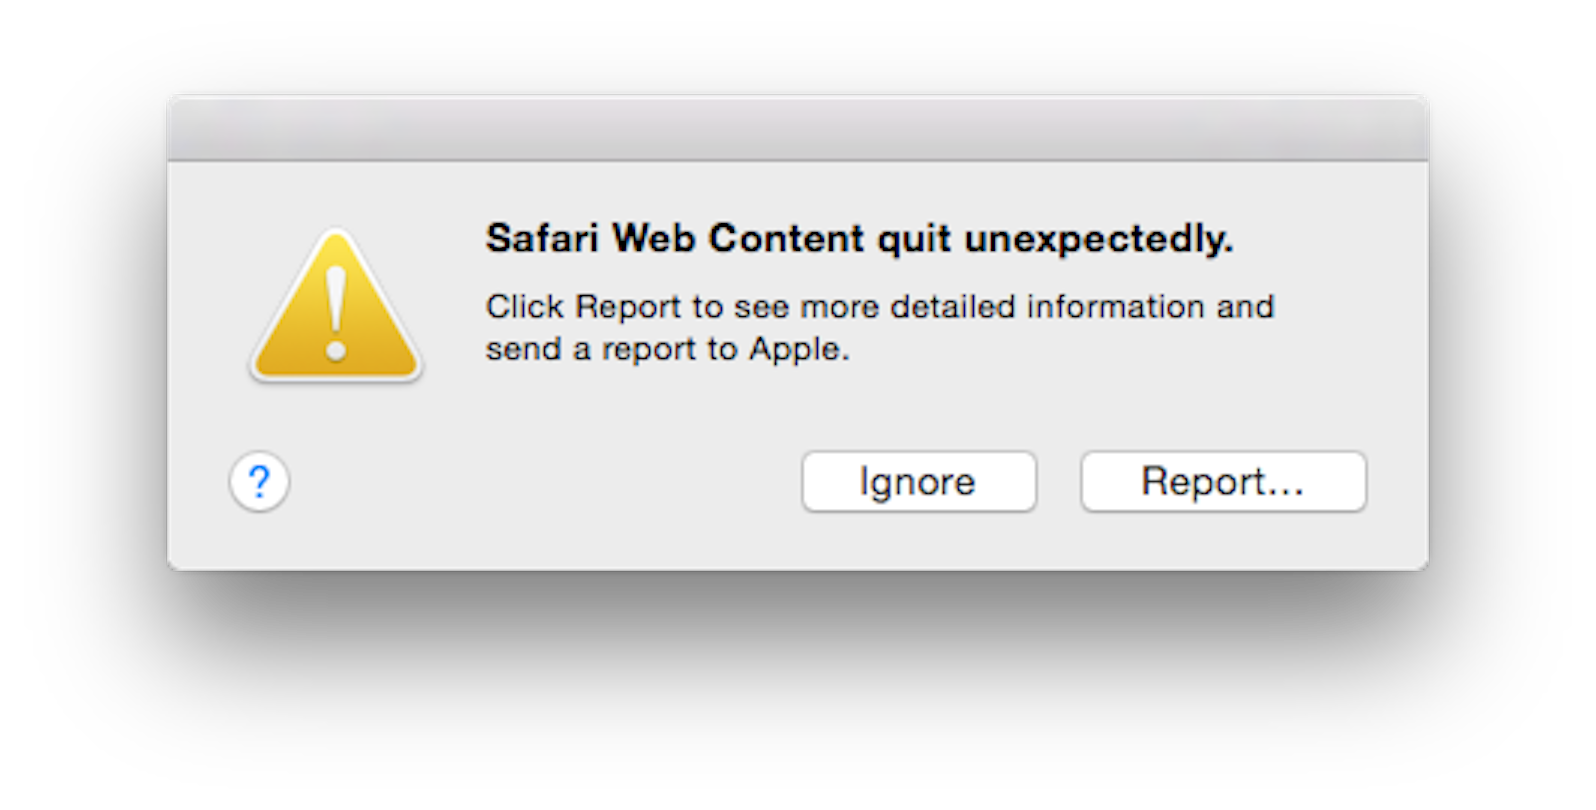 safari web content quit